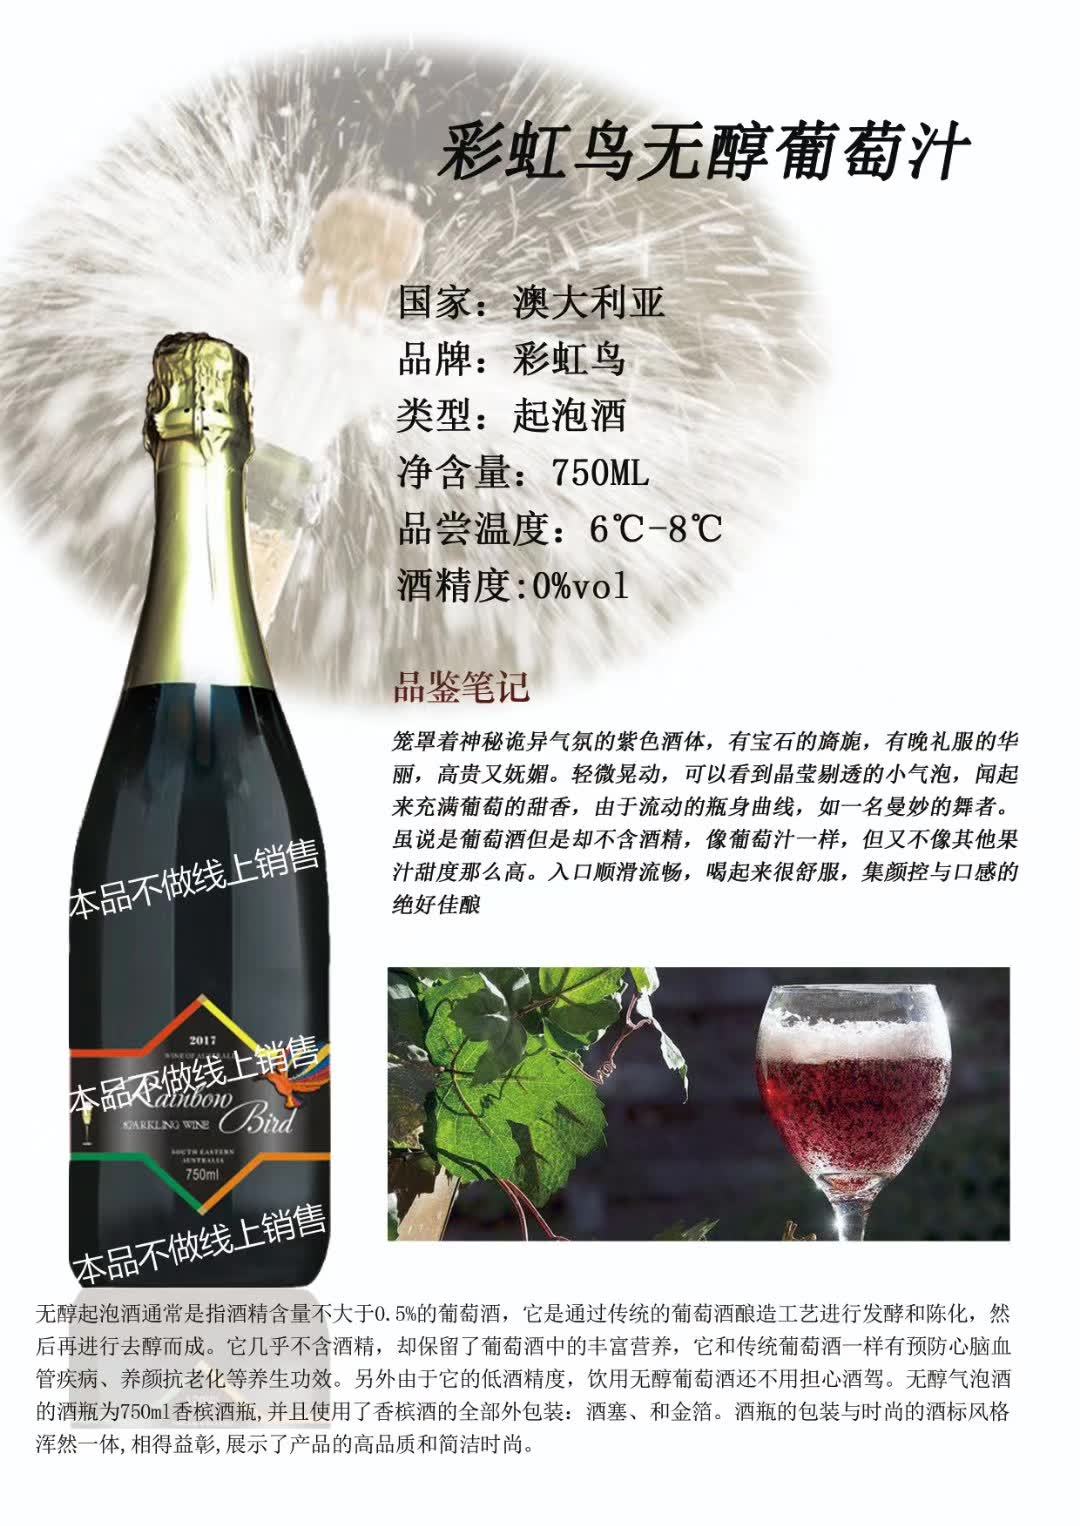 上海万耀澳大利亚原装进口彩虹鸟系列无醇葡萄汁0度酒价格